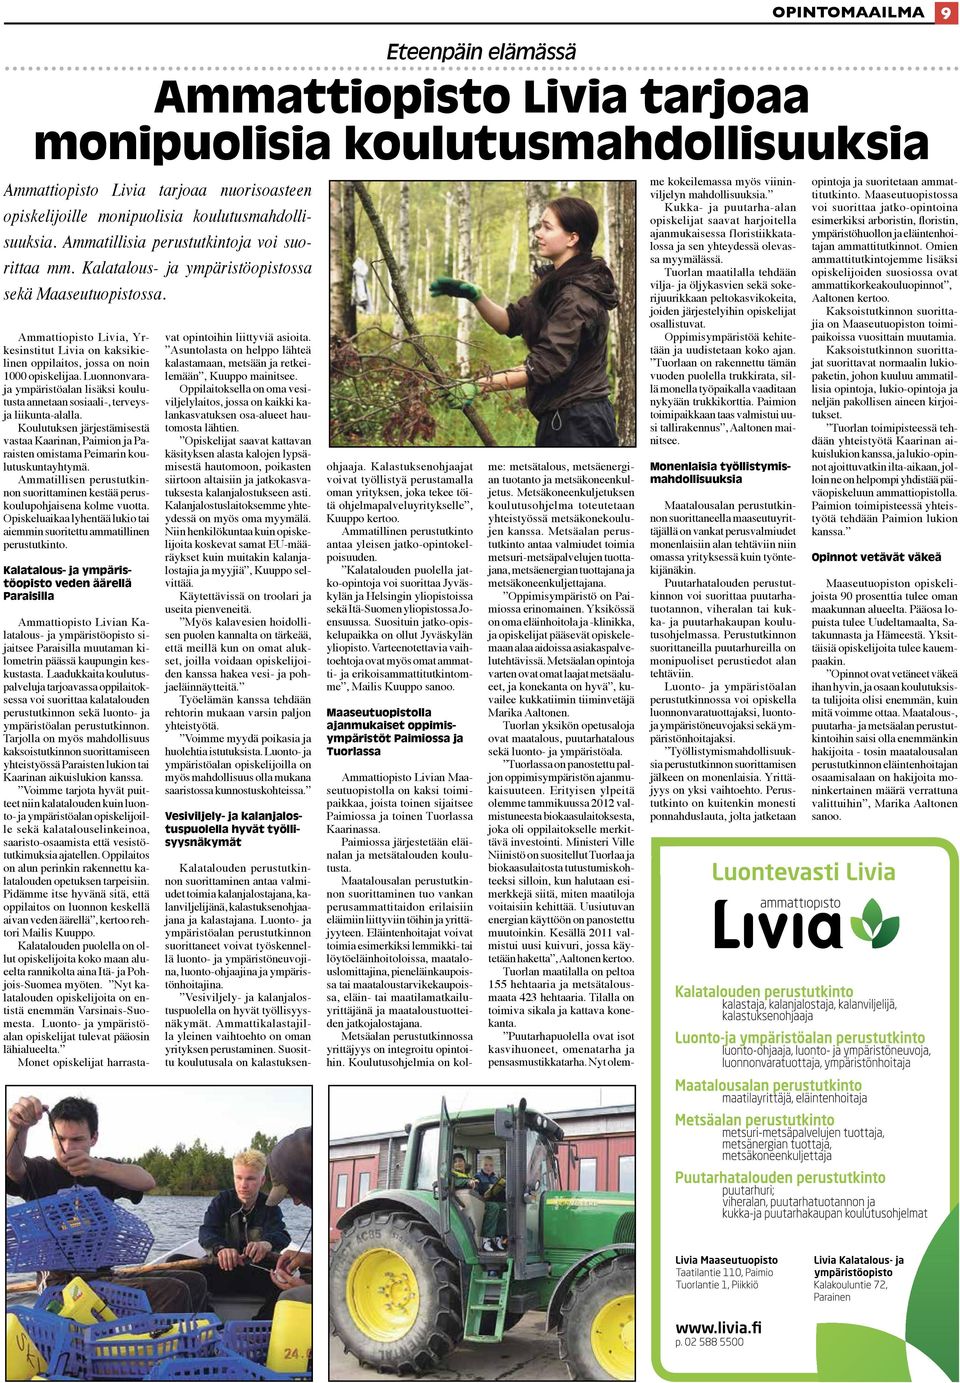 Ammattiopisto Livia, Yrkesinstitut Livia on kaksikielinen oppilaitos, jossa on noin 1000 opiskelijaa. Luonnonvaraja ympäristöalan lisäksi koulutusta annetaan sosiaali-, terveysja liikunta-alalla.